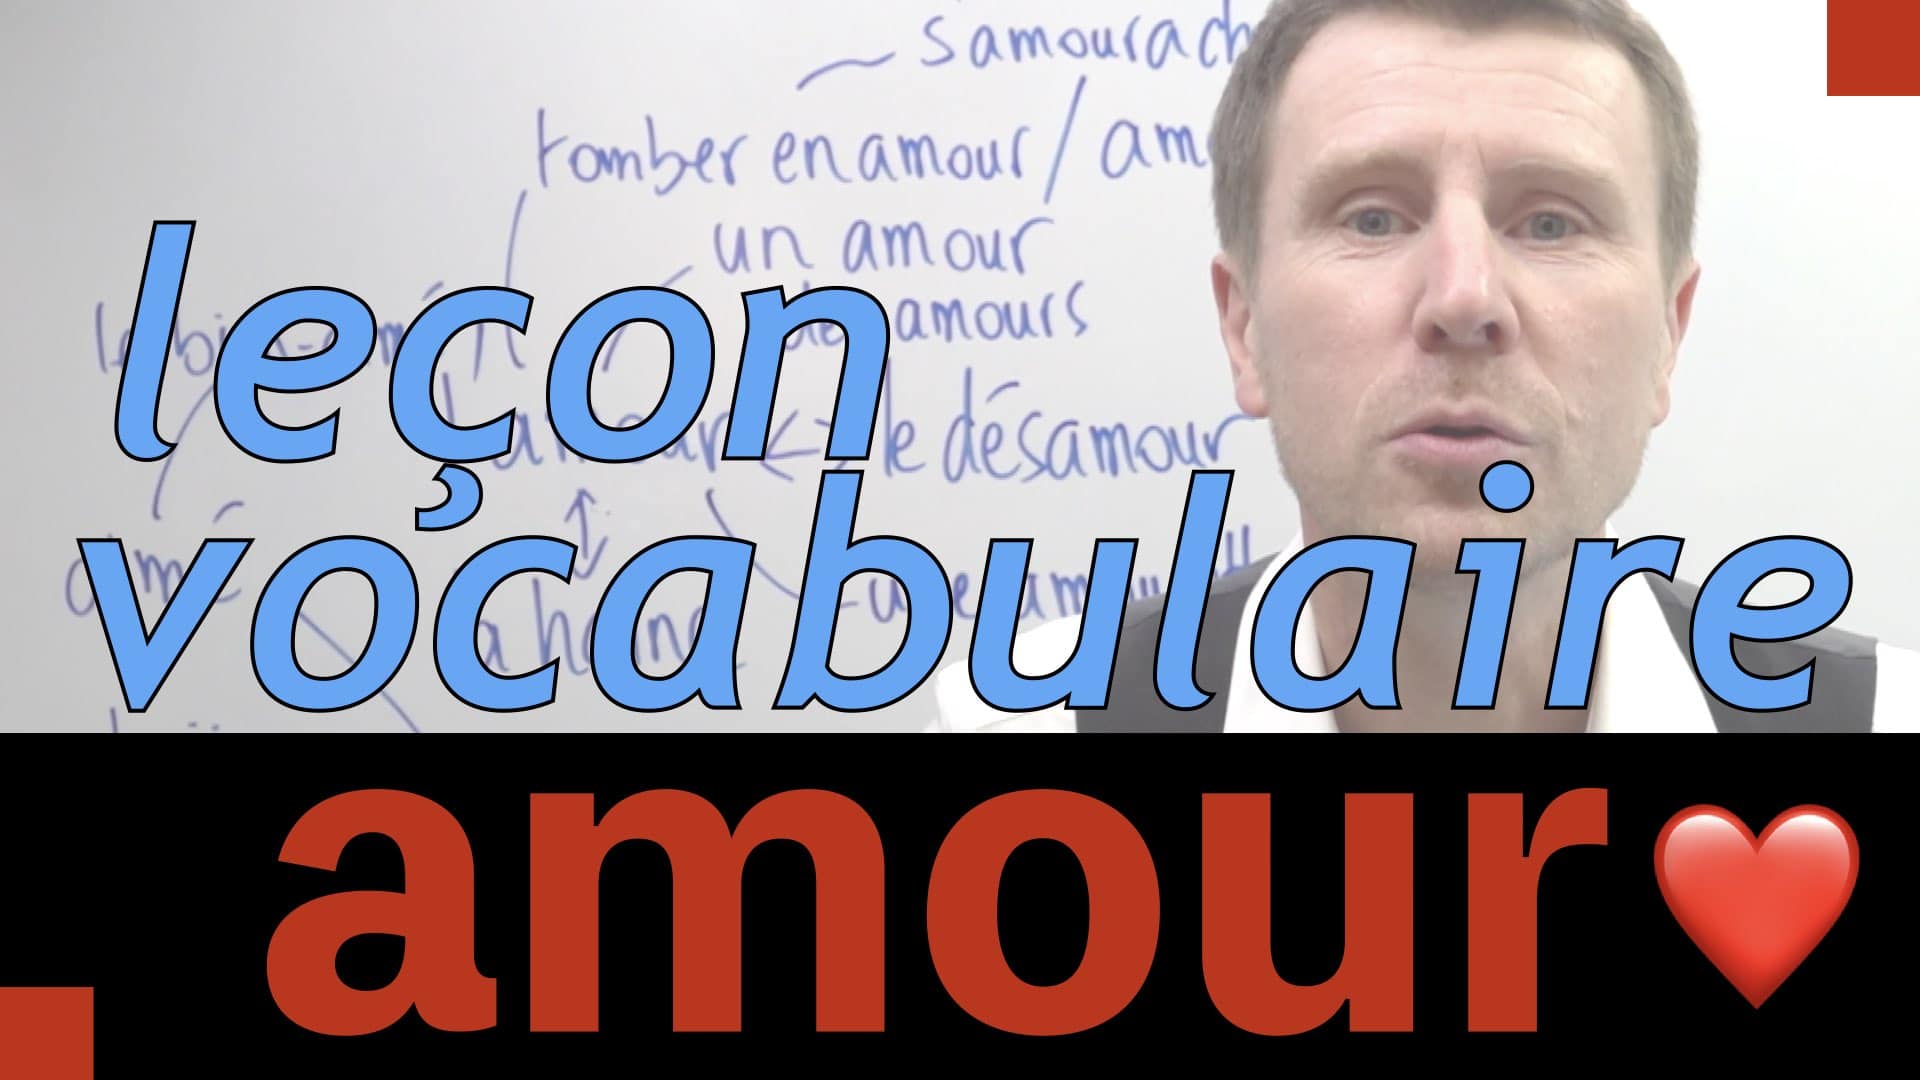 transcription video vocabulaire amour